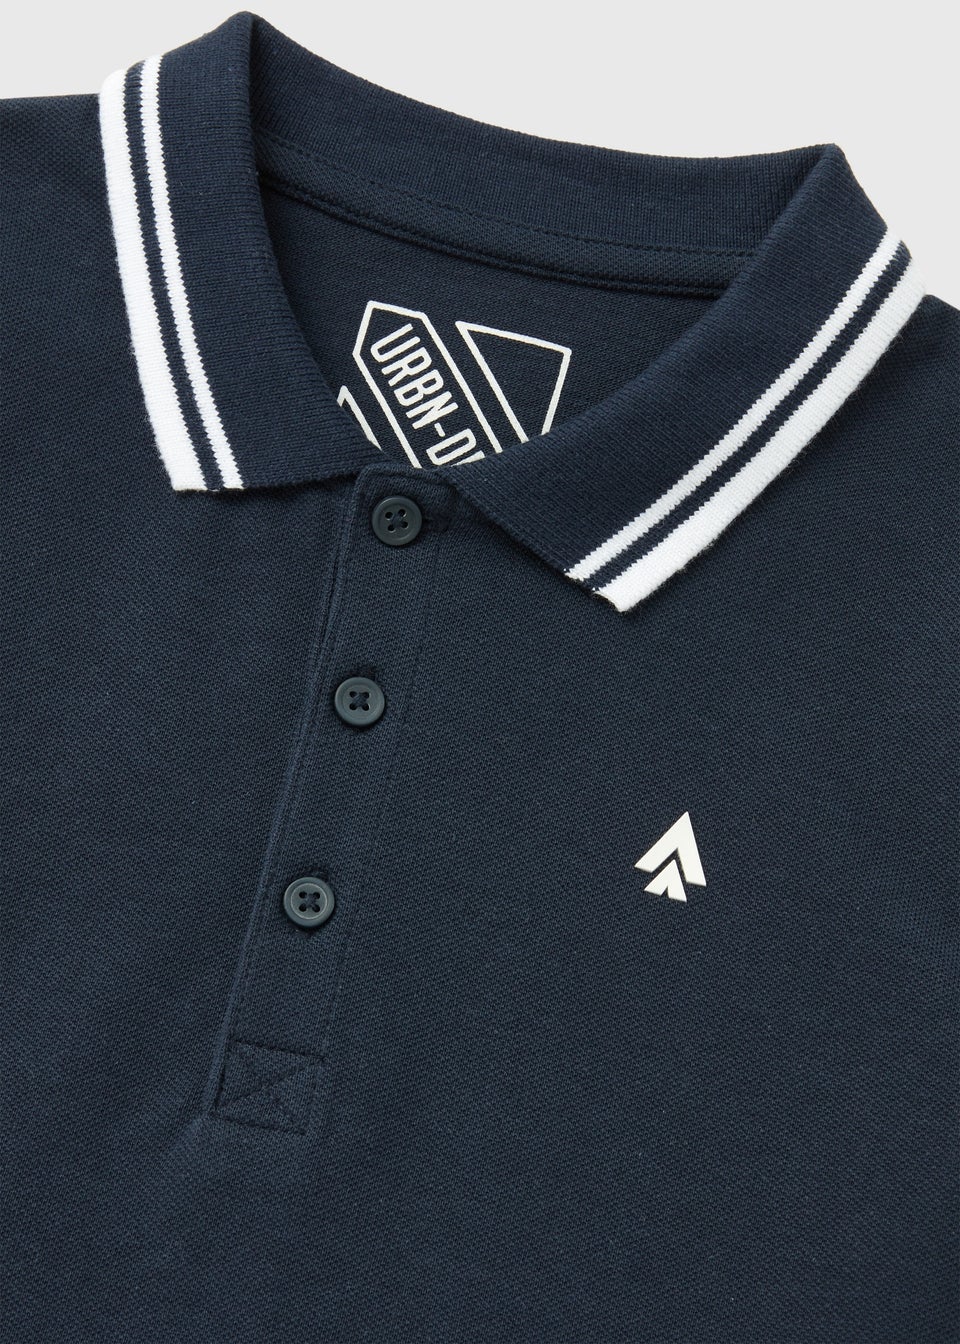 Boys Navy Cotton Polo Shirt (7-13yrs)